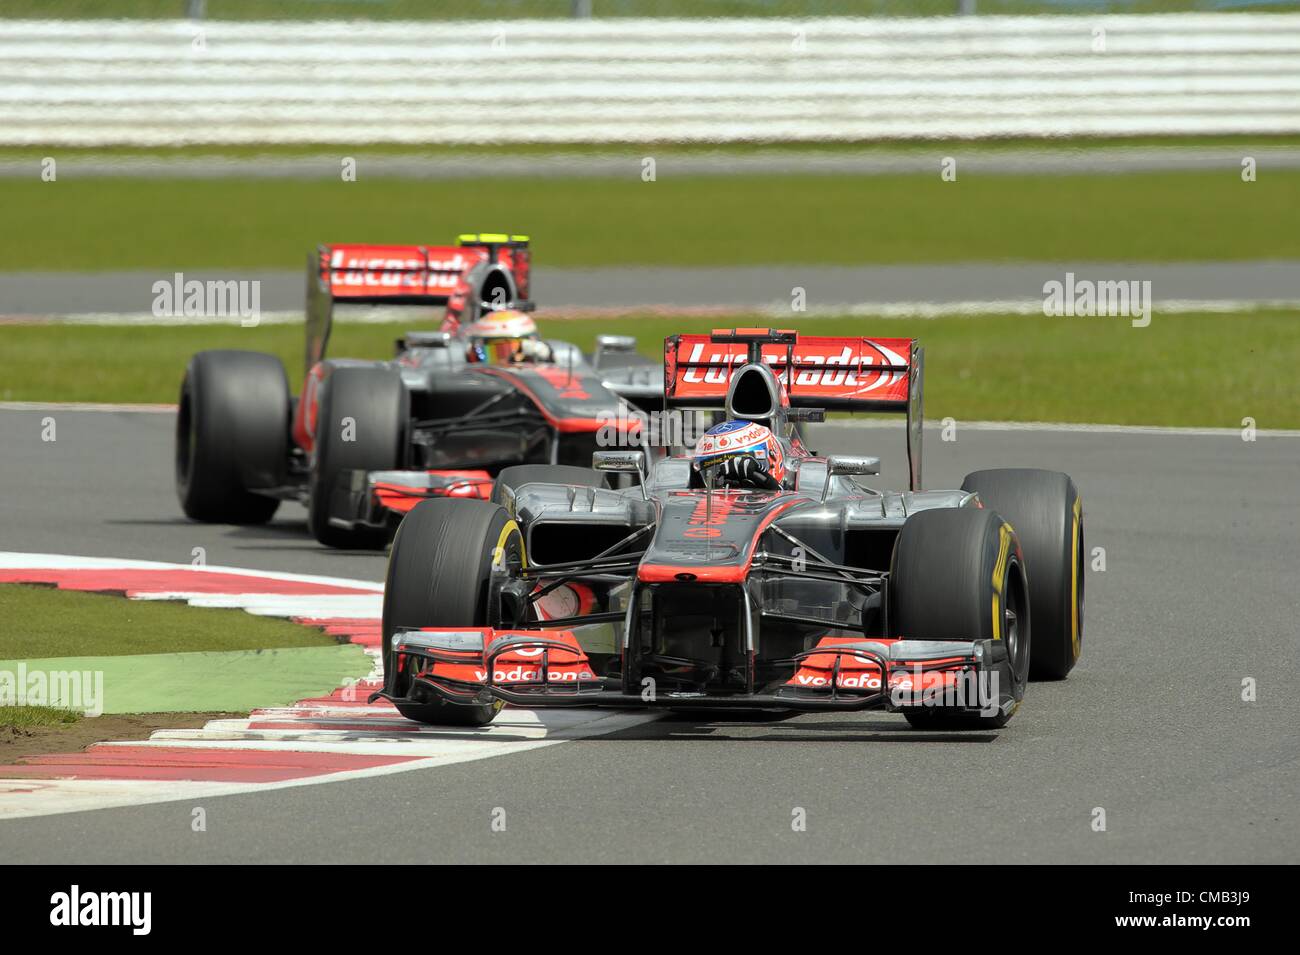 08.07.2012 Towcester, England. Britische Formel1-Fahrer Jenson Button McLaren-Mercedes vor Teamkollegen britischen Lewis Hamilton steuern ihre Autos während der Grand Prix von Großbritannien in Silverstone Rennstrecke in Northamptonshire, Großbritannien, 8. Juli 2012. Stockfoto